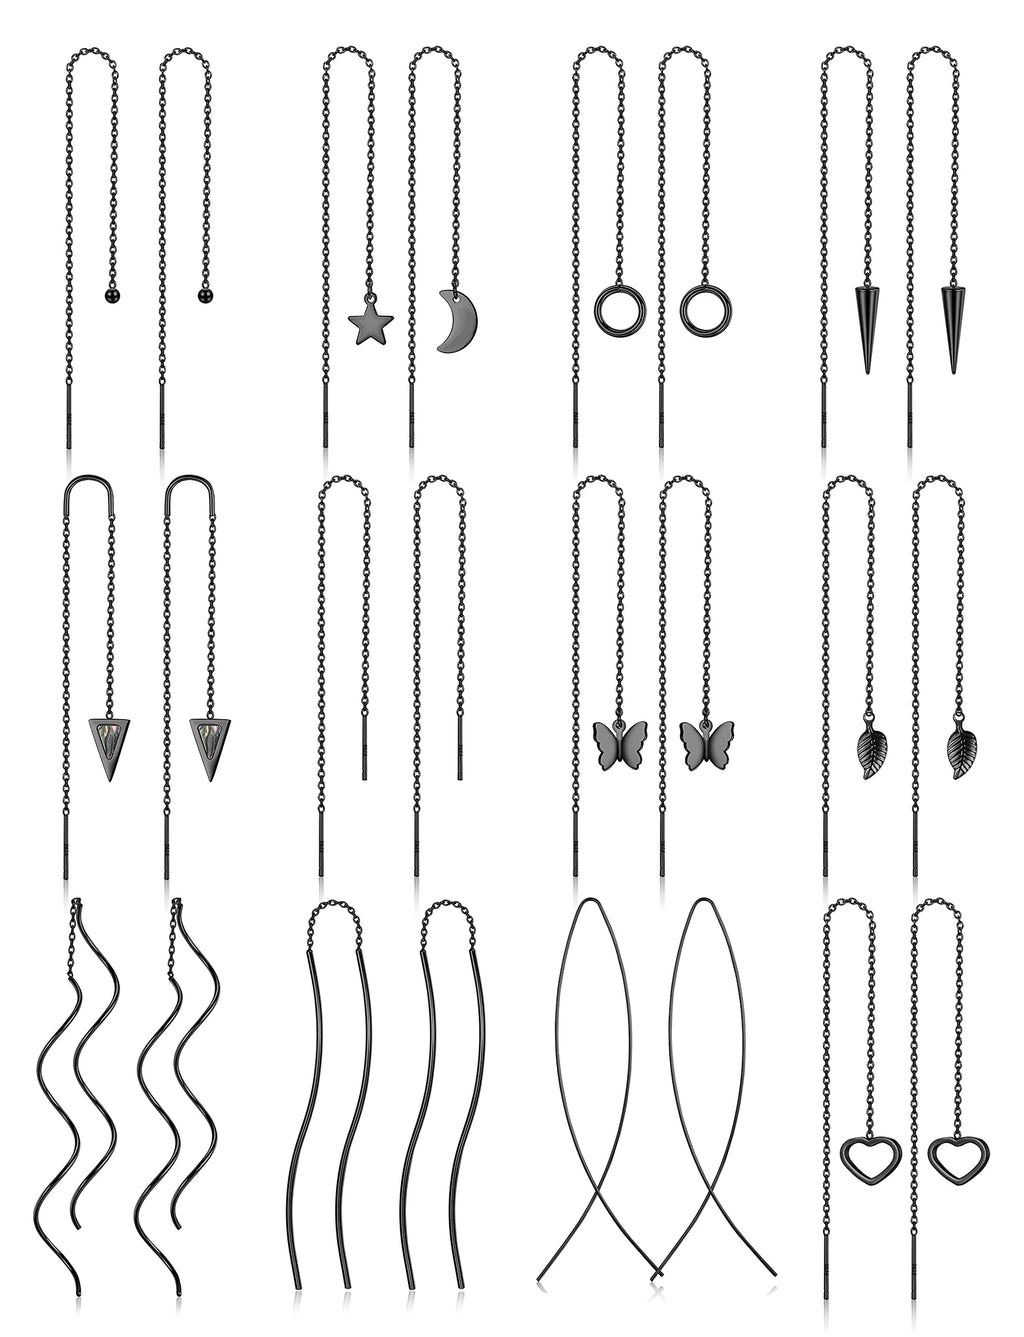 [Australia] - Drperfect 12Pairs Stainless Steel Threader Earrings for Women Chain Tassel Earrings Double Twist Wave Dangle Drop Chain Earrings Set Black 